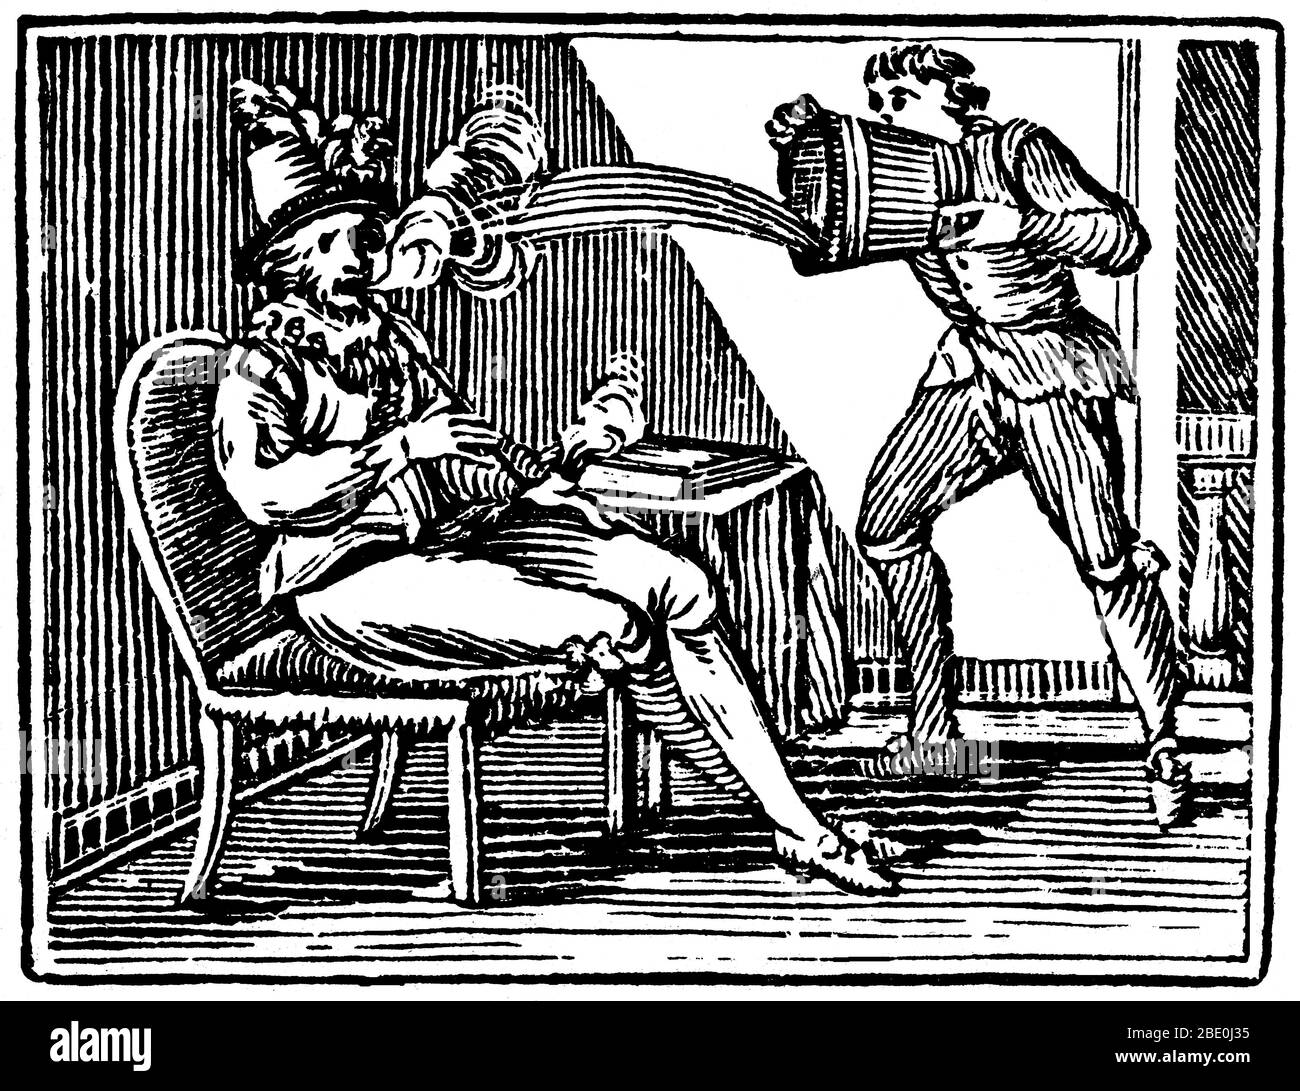 Angeblich, während das Rauchen eine Pfeife des ersten Tabak aus Amerika gebracht, Raleigh wurde von einem erschrockenen Diener, der ihn mit einem Krug Bier übergossen gelöscht. Walter Raleigh (1554 - Oktober 29,1618) war ein englischer Aristokrat, Schriftsteller, Dichter, Soldat, Höfling, Spion und Entdecker. Er ist am meisten für die Popularisierung Tabak in England erinnert. Sein Plan für die Kolonisierung in Nordamerika endete 1584 in einem Scheitern auf Roanoke Island, aber ebnete den Weg für die nachfolgenden Kolonien. Gravur, Mitte des 19. Jahrhunderts. Stockfoto